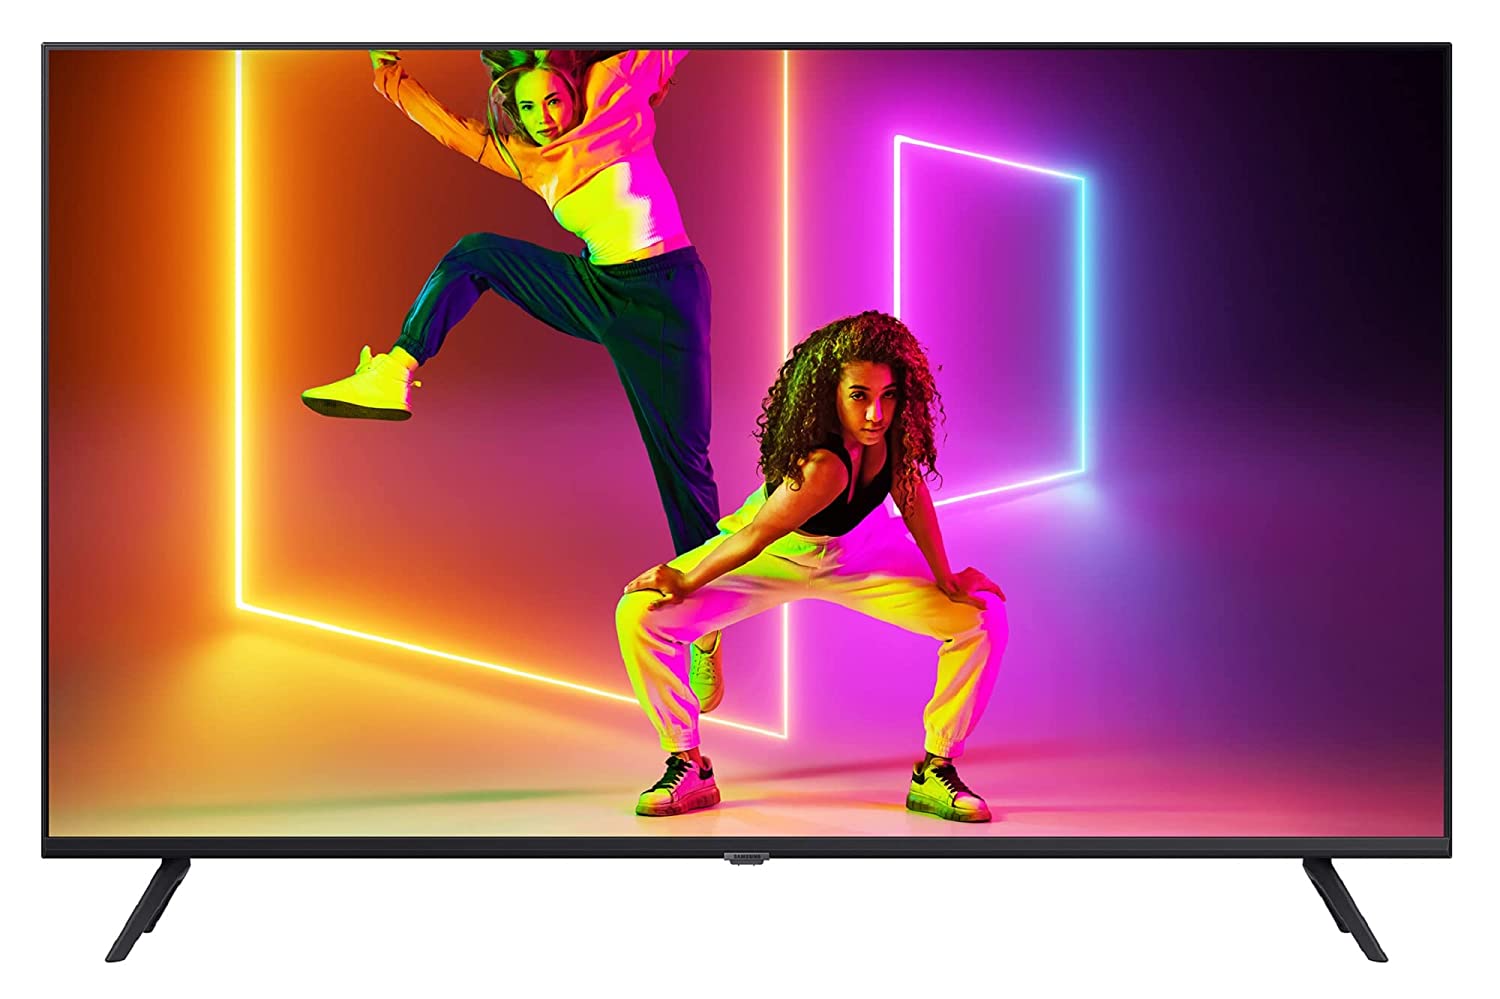 Smart TV Deal: स्मार्ट टीवी पर सबसे स्मार्ट डील, 55 इंच के इस टीवी पर आया है बंपर डिस्काउंट!